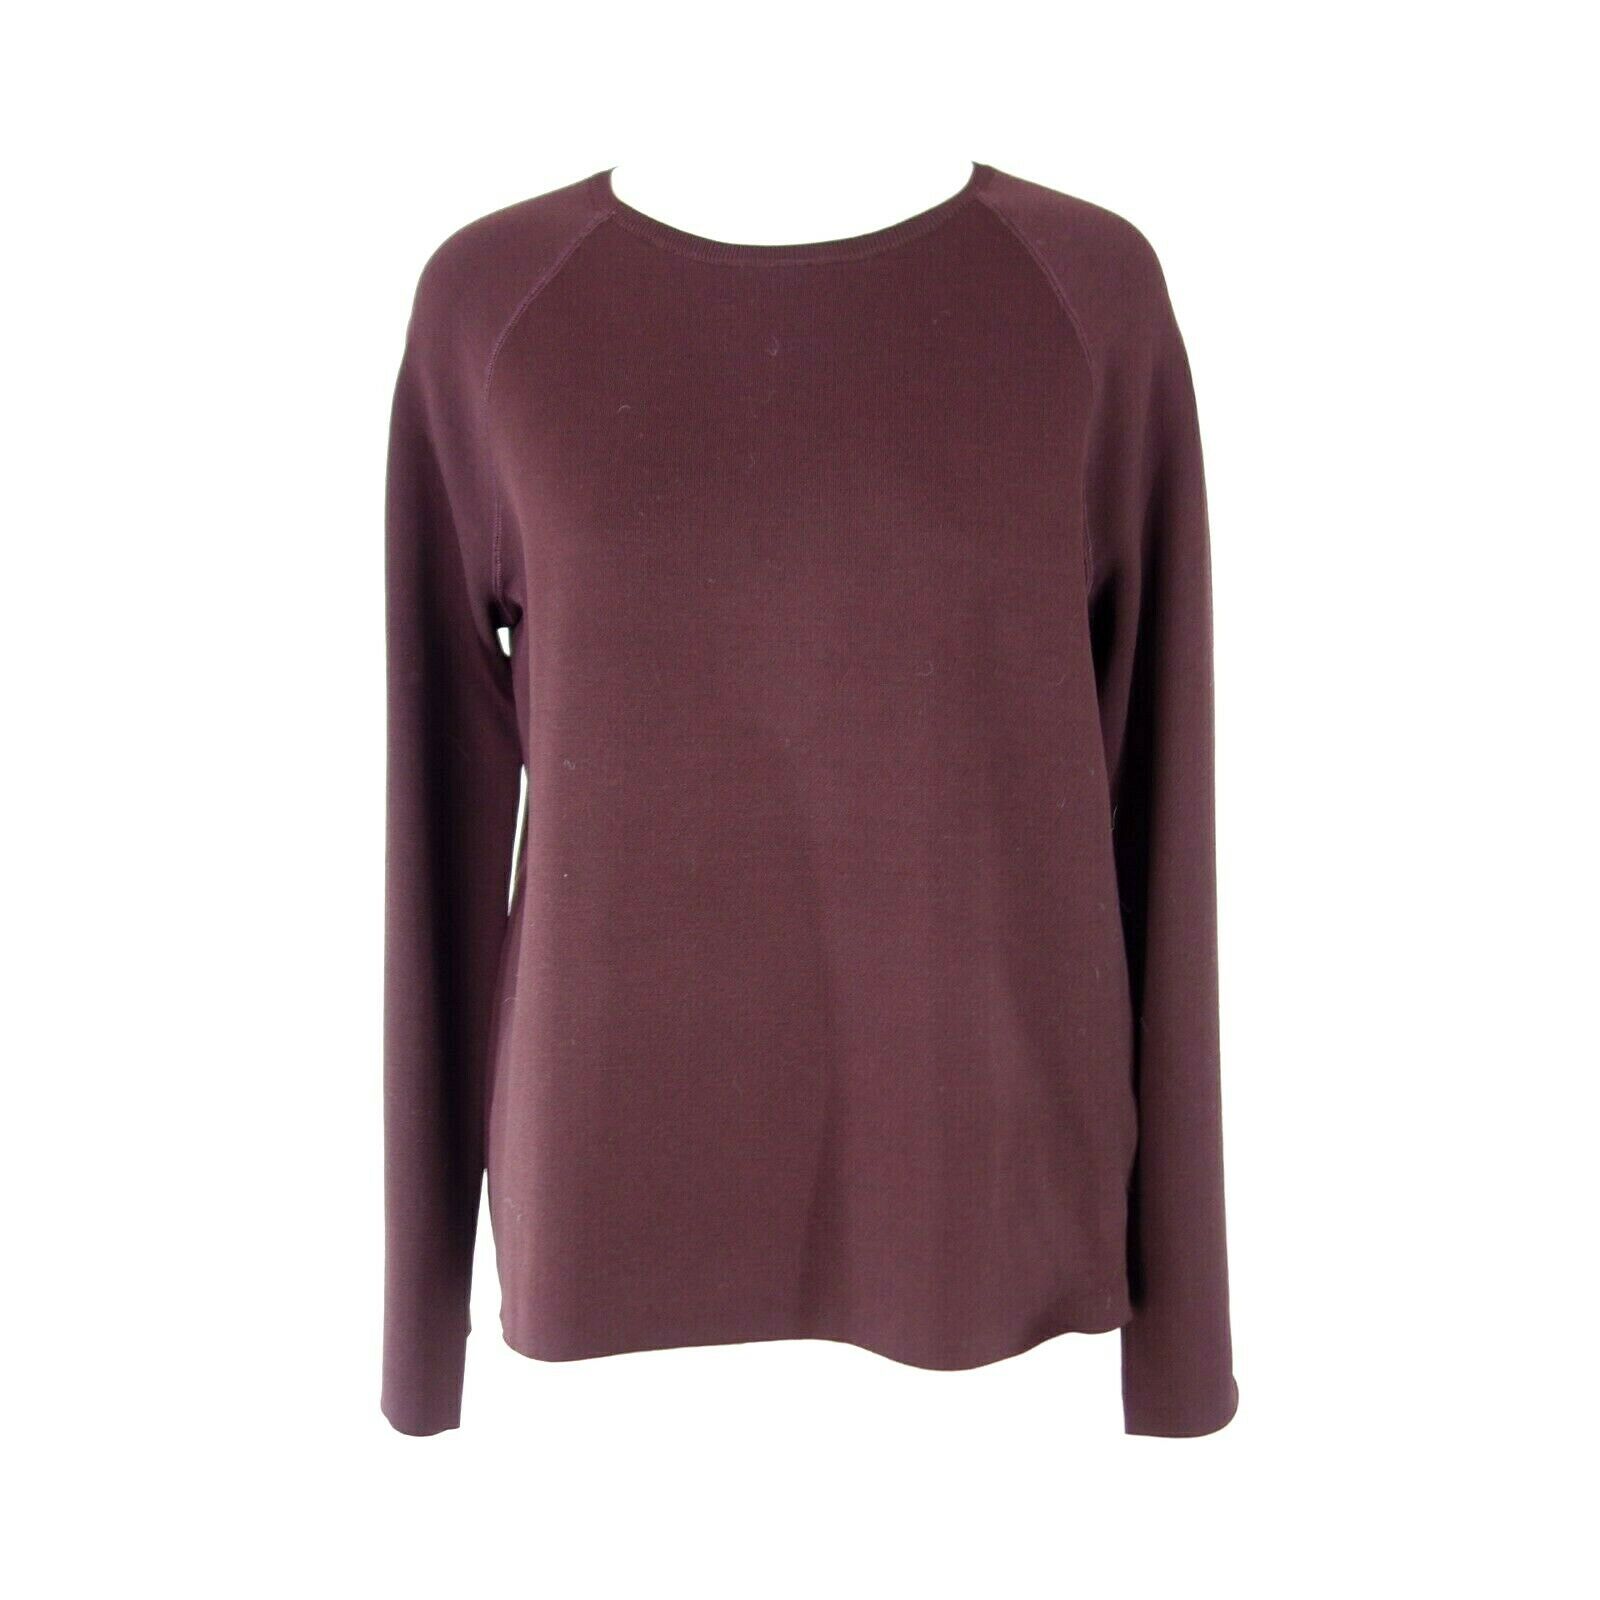 Drykorn Damen Pullover Sweater Modell Callie Bordeauxrot Rundhals Np 199 Neu - 36